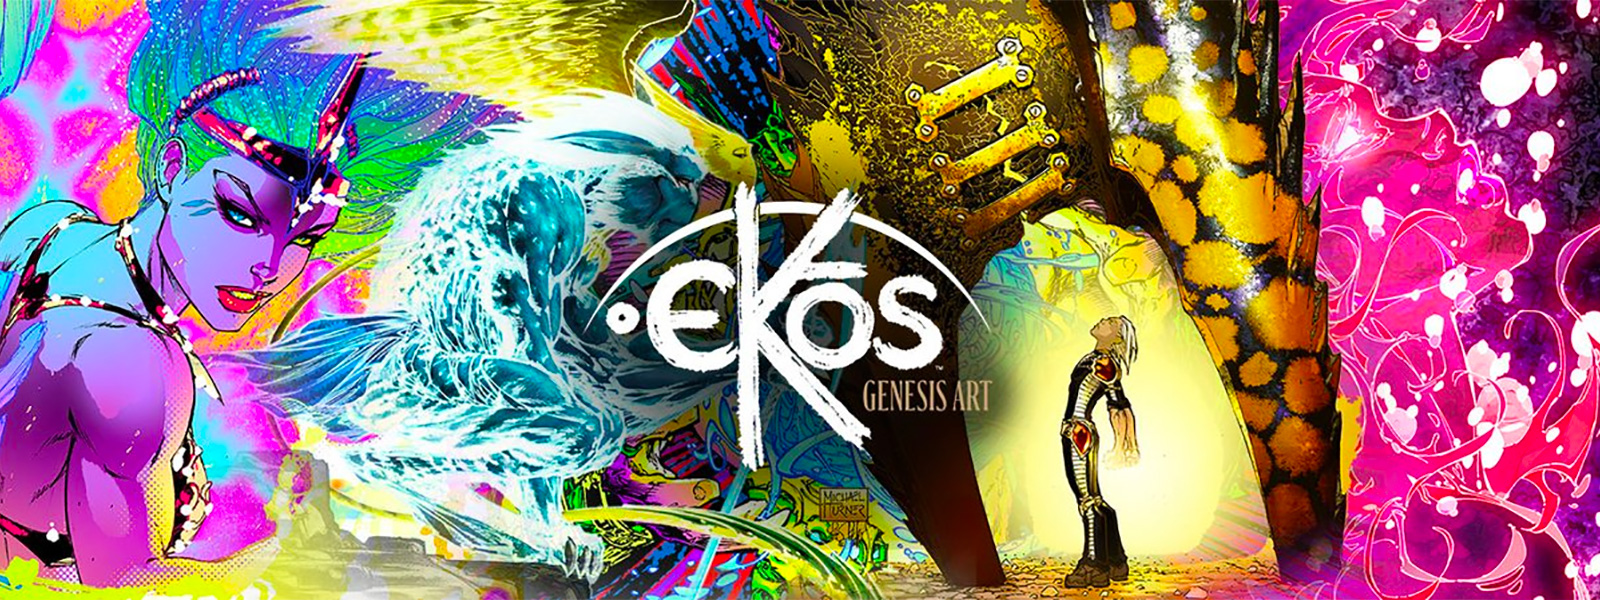 Ekos Genesis Art